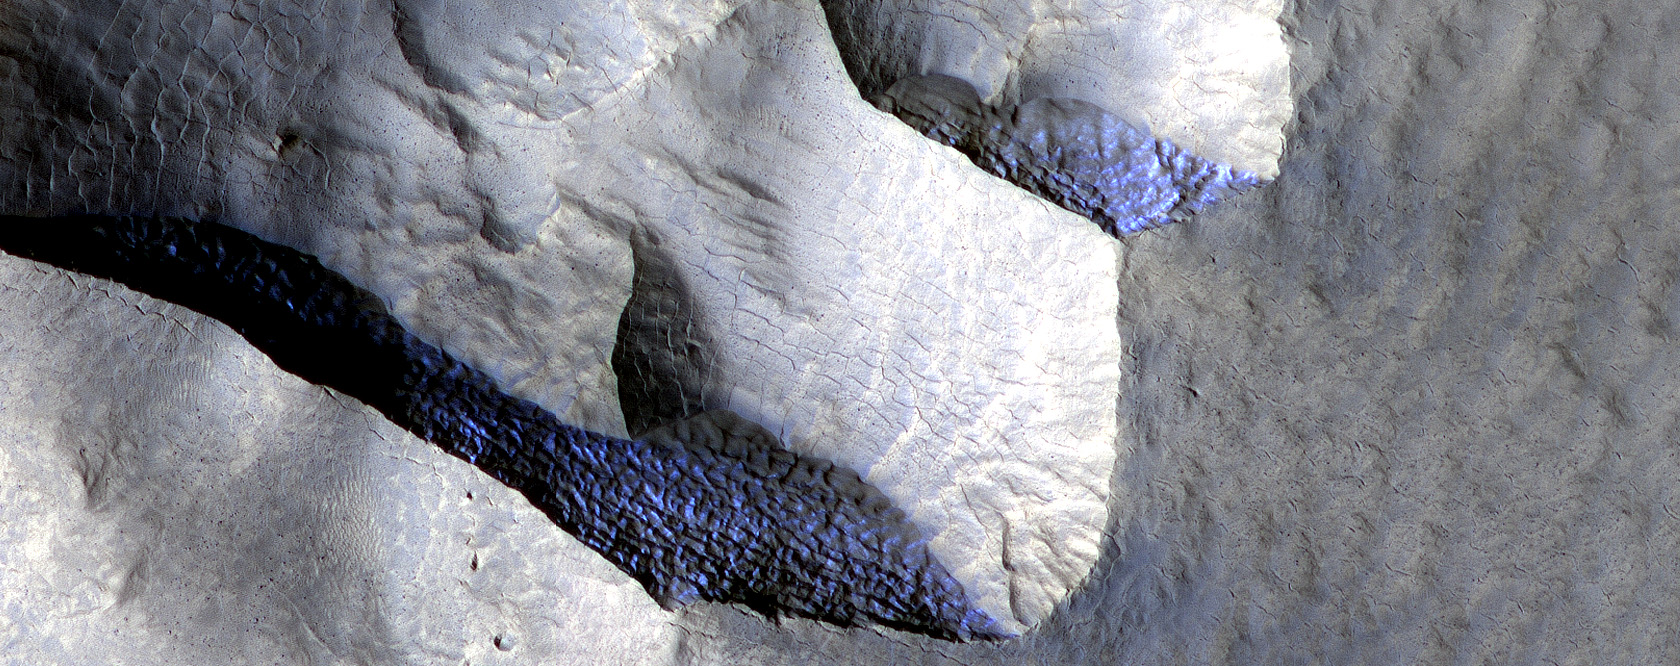 Acantillados helados en Marte